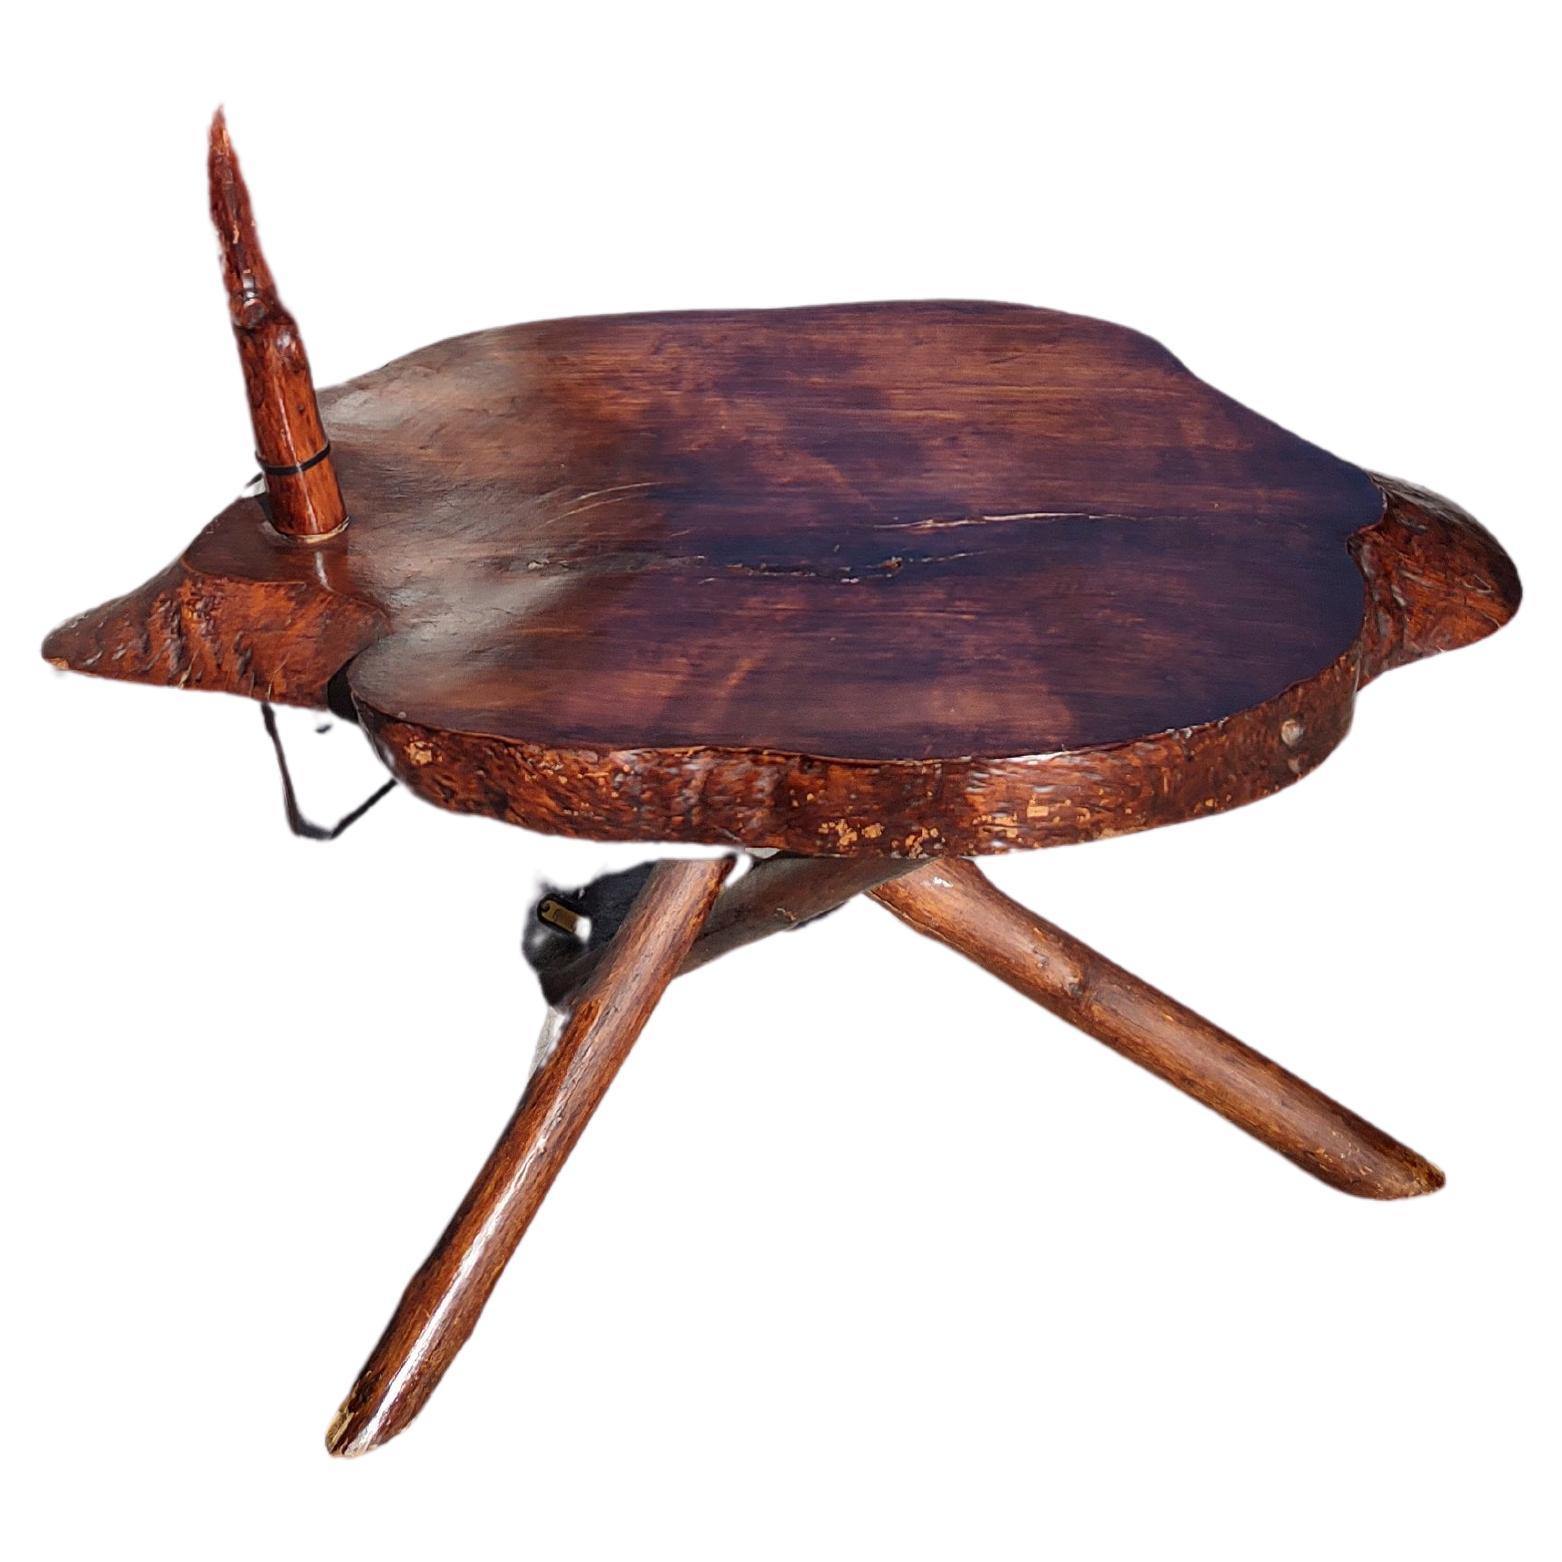 Fabuleux lampadaire Twig coudé dans le style Adirondack avec une table de bonne taille. La taille de la table est de 29 x 19,5 dalles de 1,85 d'épaisseur. Fabriqué à partir d'érables locaux et teinté. En excellent état vintage avec une usure